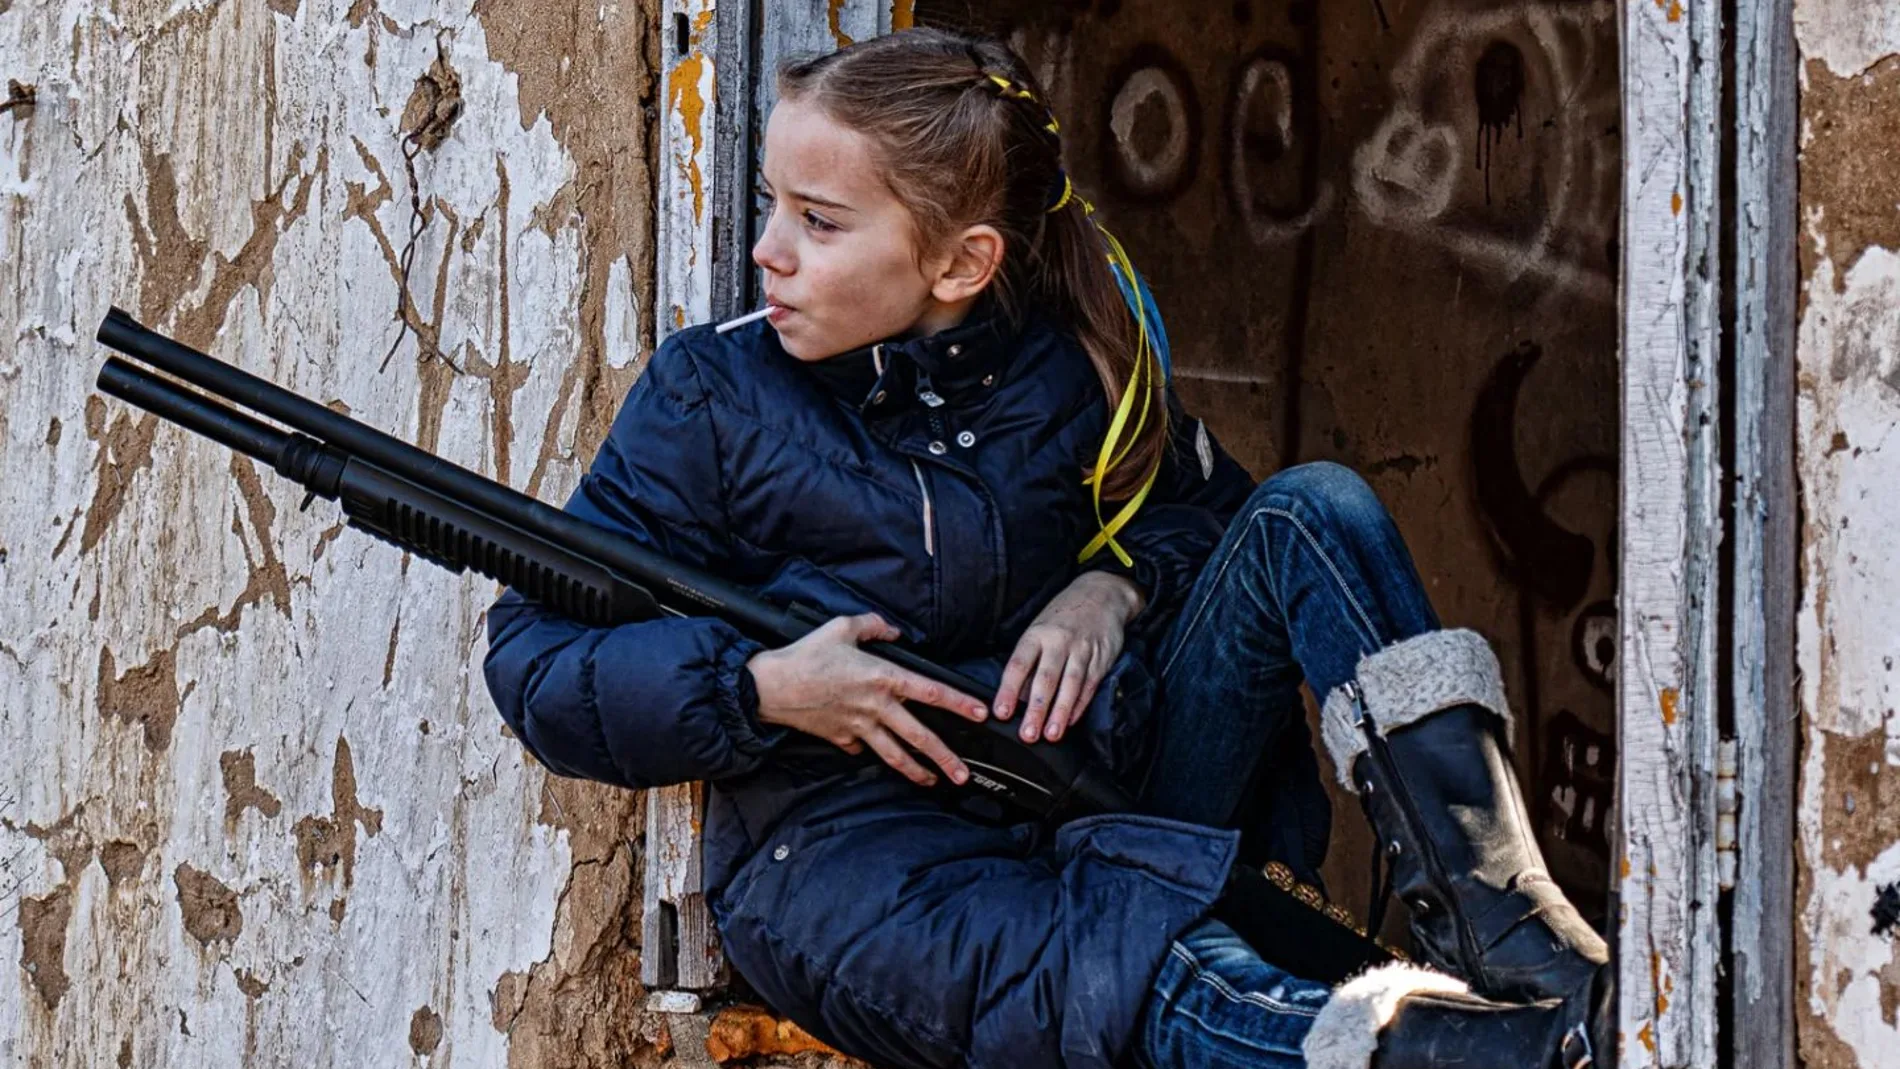 La historia real tras la icónica imagen de la niña con piruleta y fusil de la guerra de Ucrania